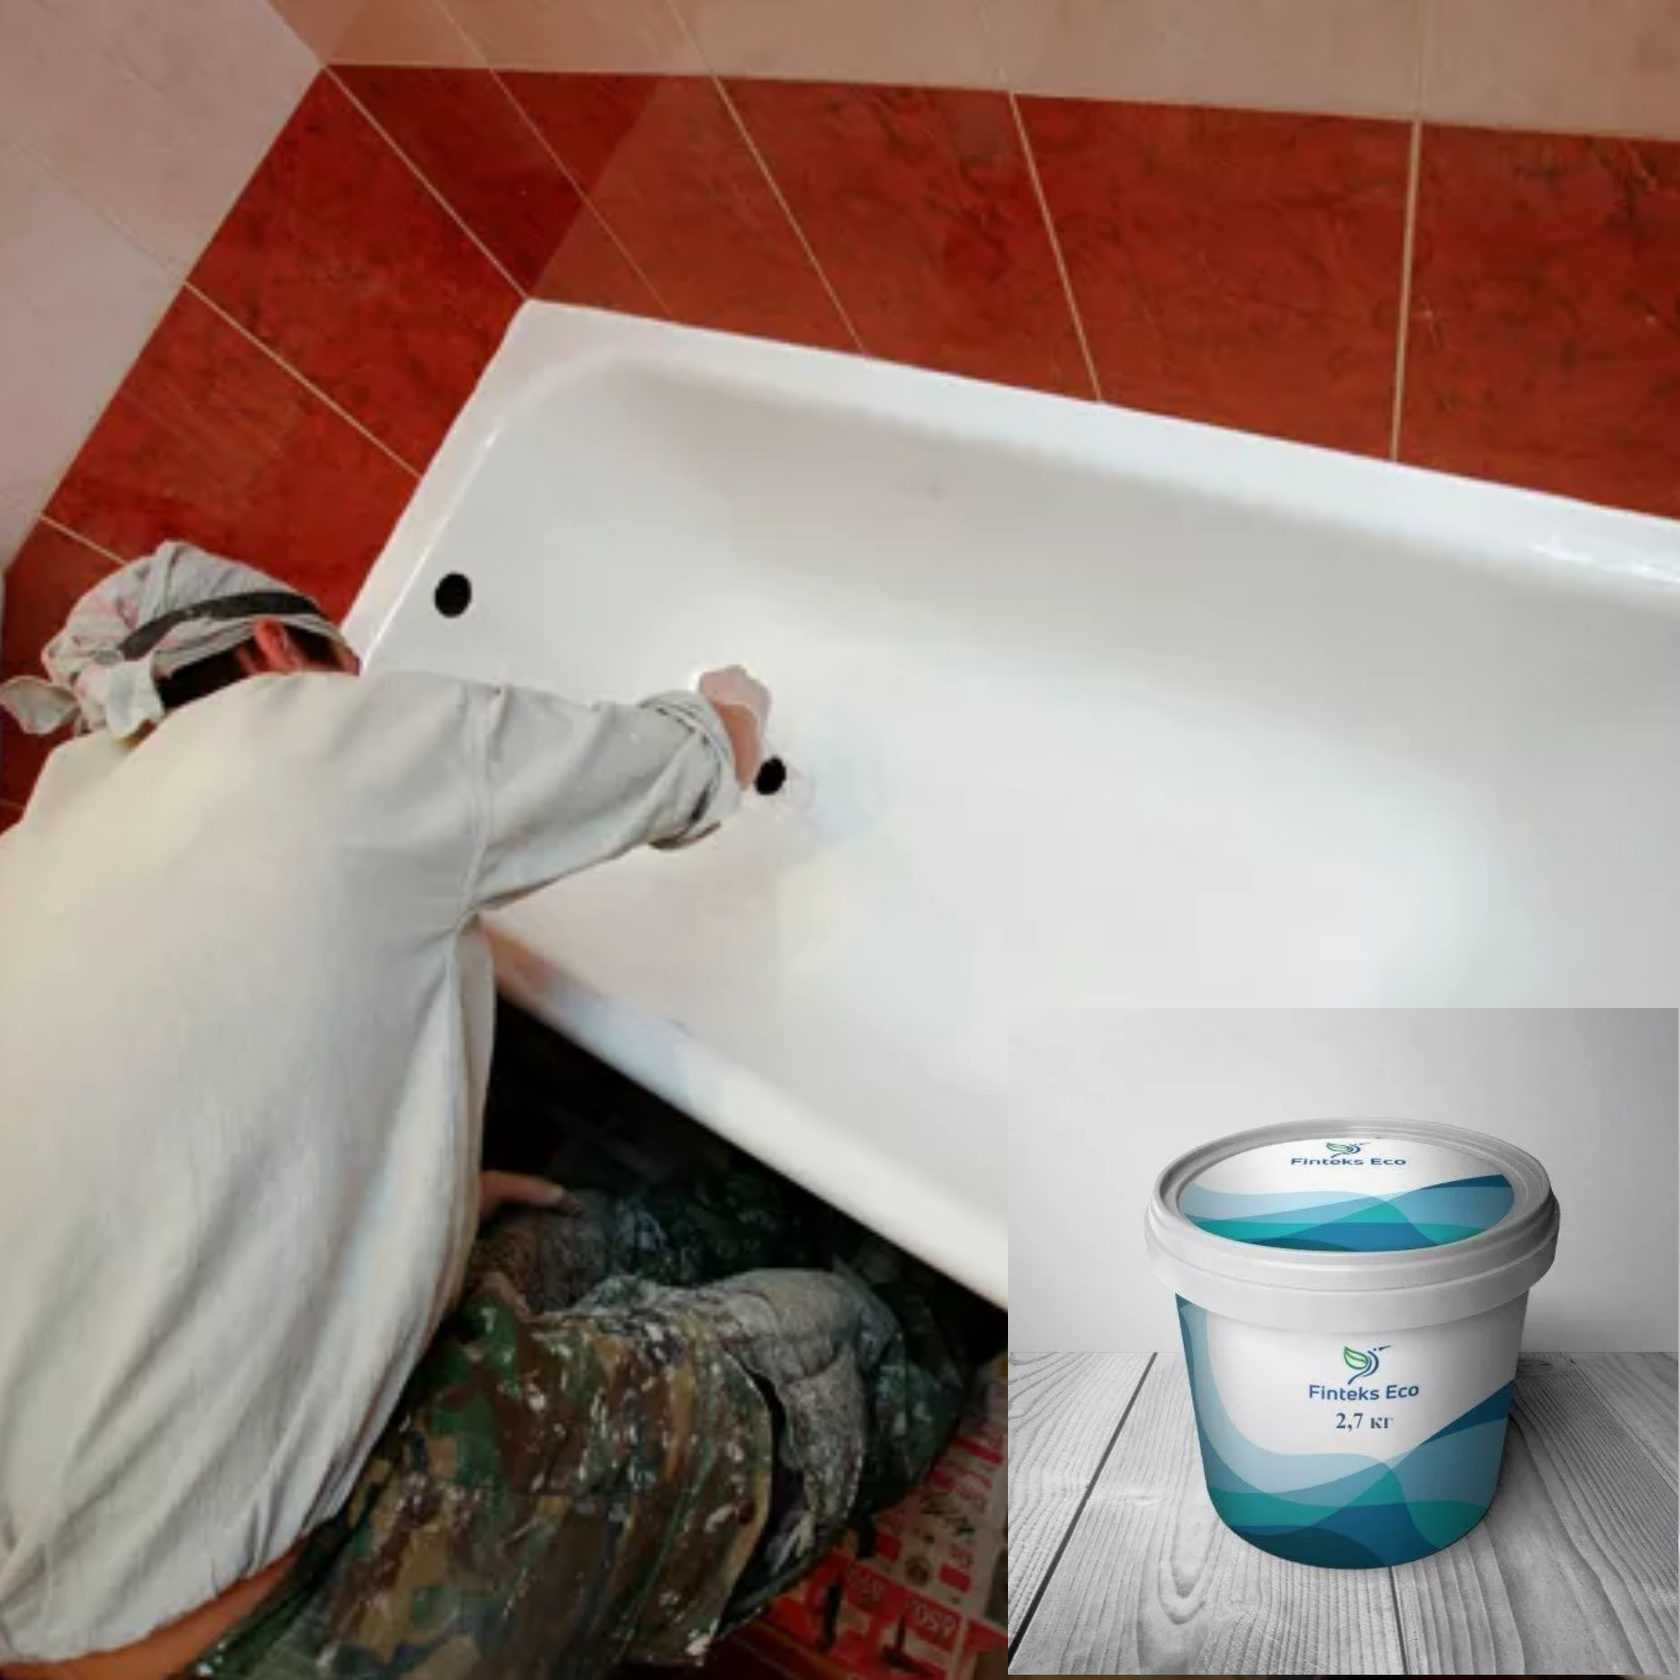 Как сделать ремонт и реставрацию ванны своими руками: используем жидкий акрил